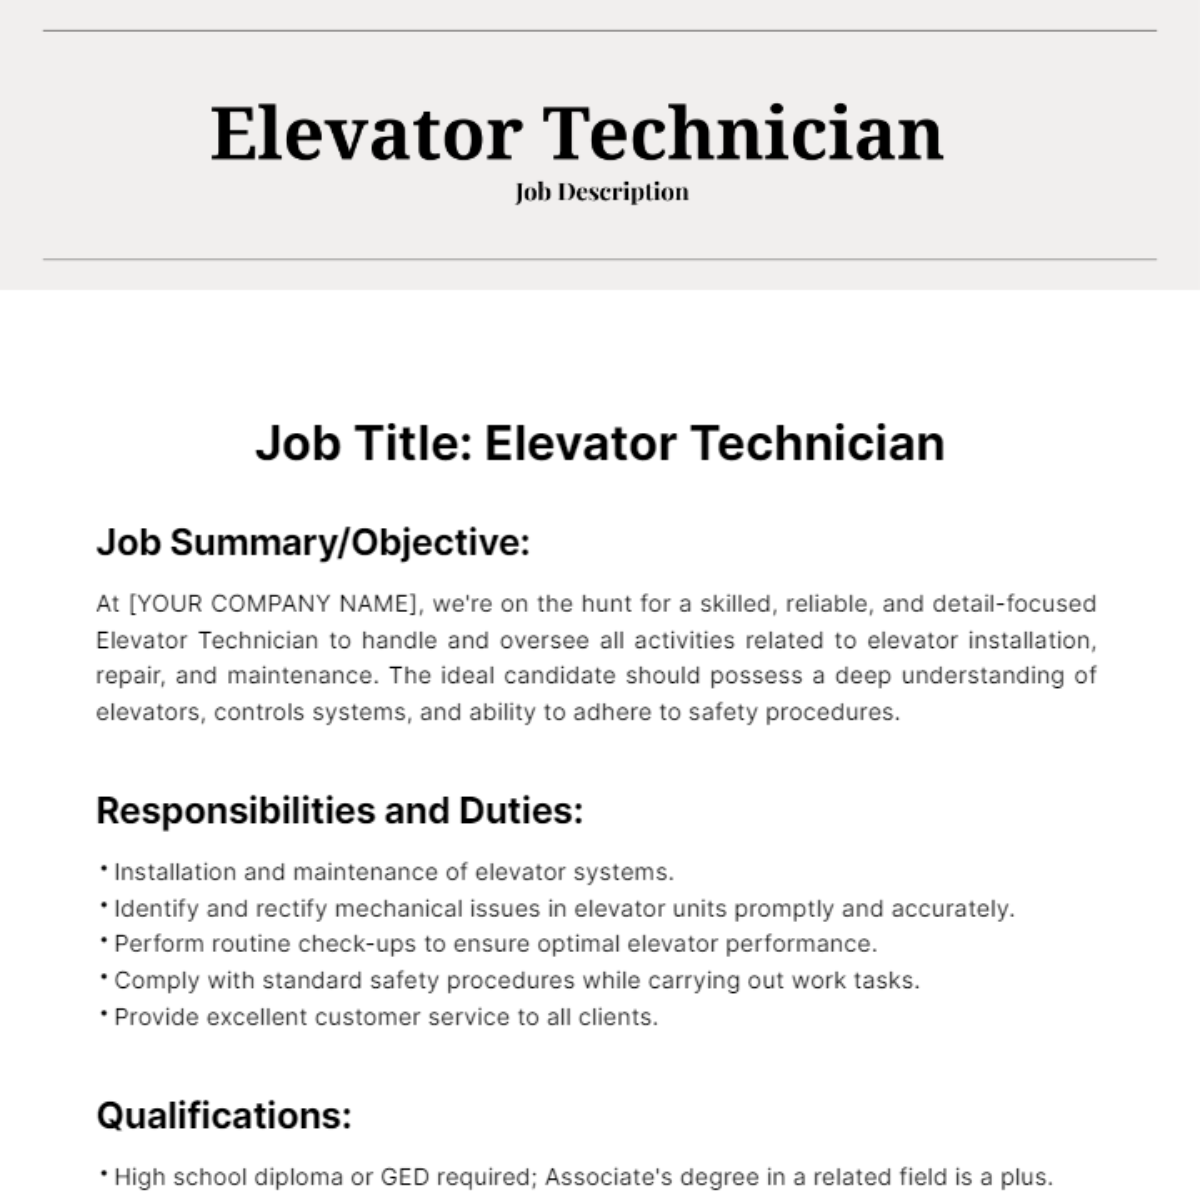 Elevator Technician Job Description Template